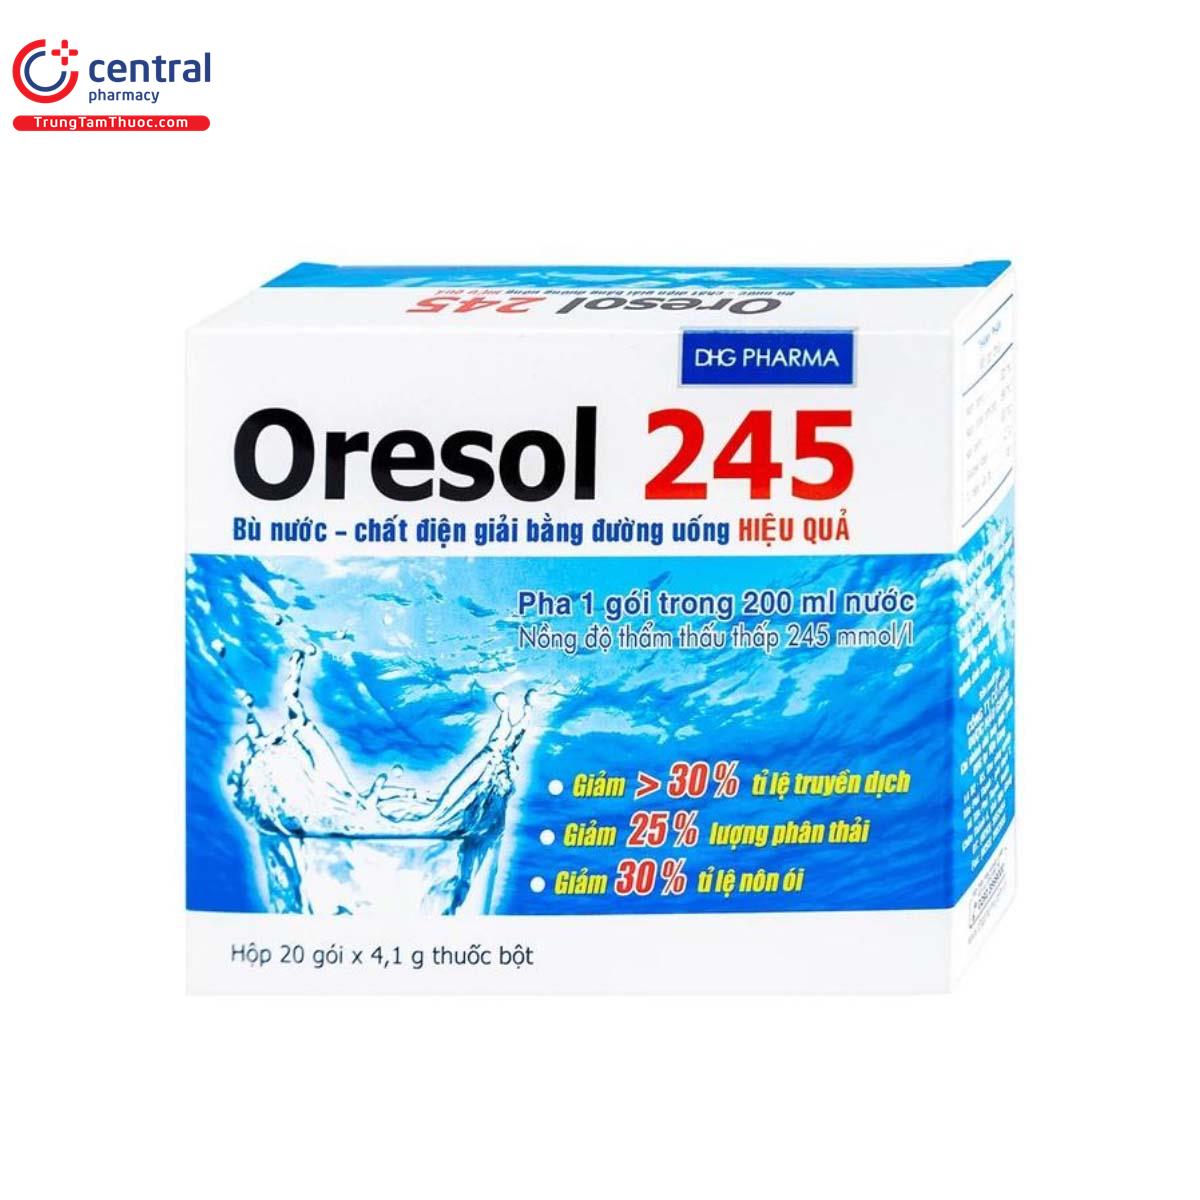 Oresol 245 DHG Pharma